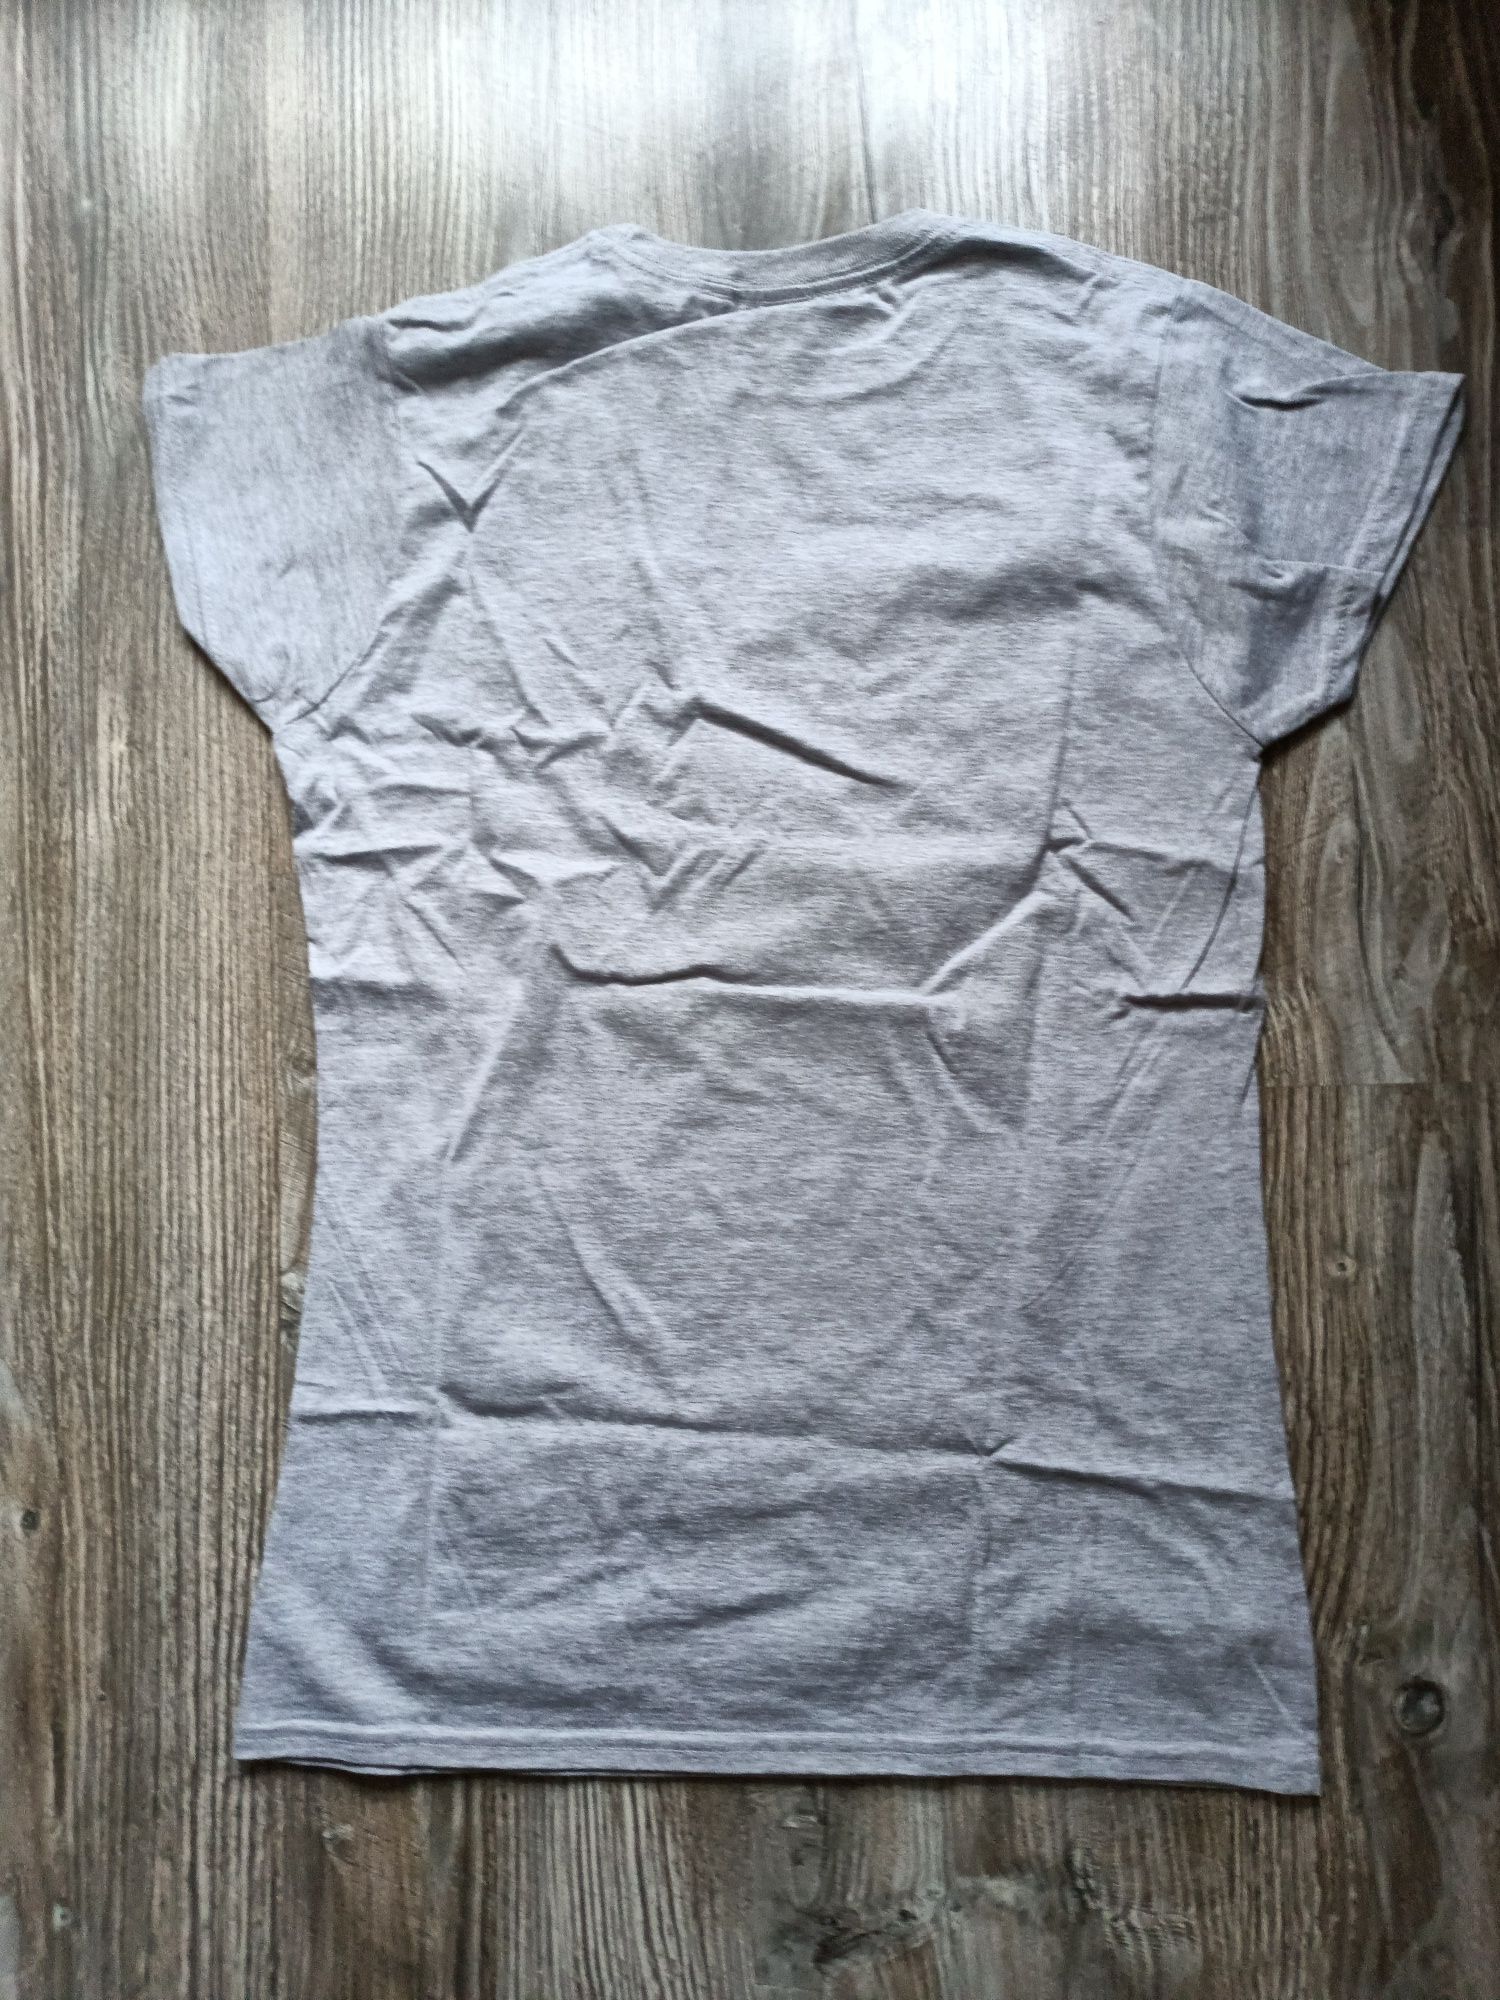 T-shirt Radio Eska nowa koszulka dziecięca rozmiar M